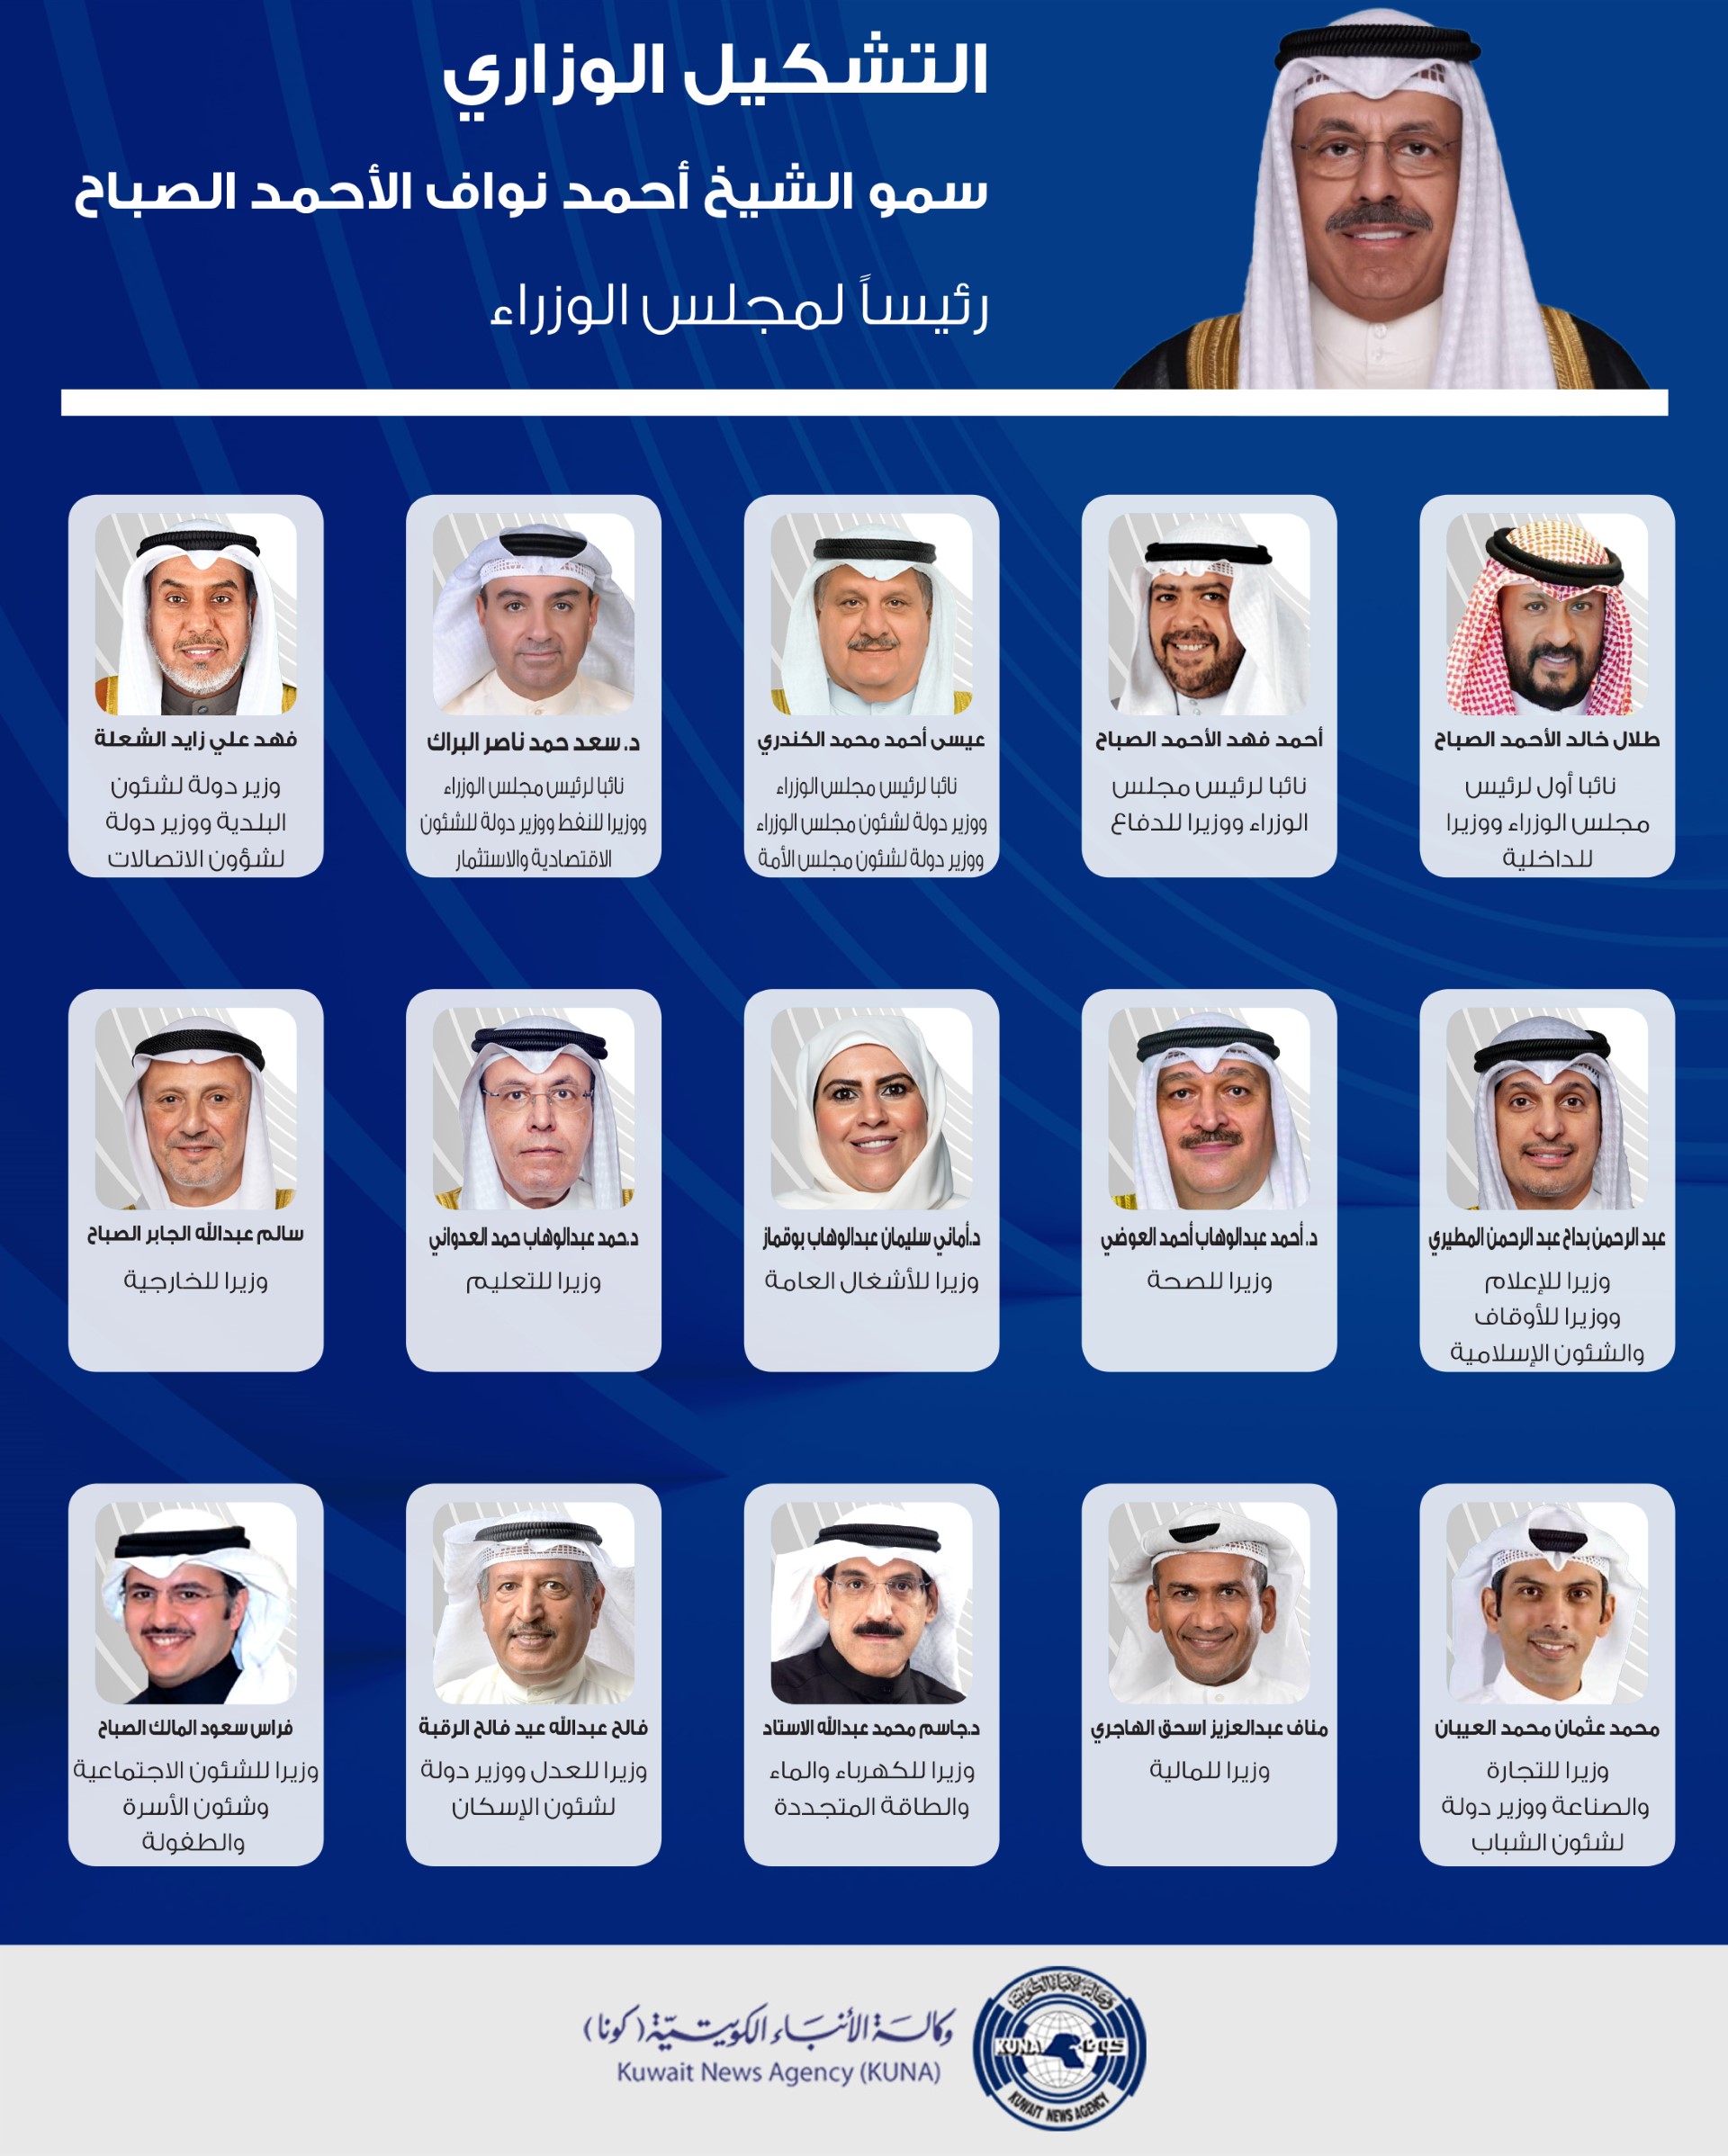 السير الذاتية لأعضاء الحكومة الكويتية الجديدة برئاسة سمو الشيخ أحمد نواف الأحمد الصباح